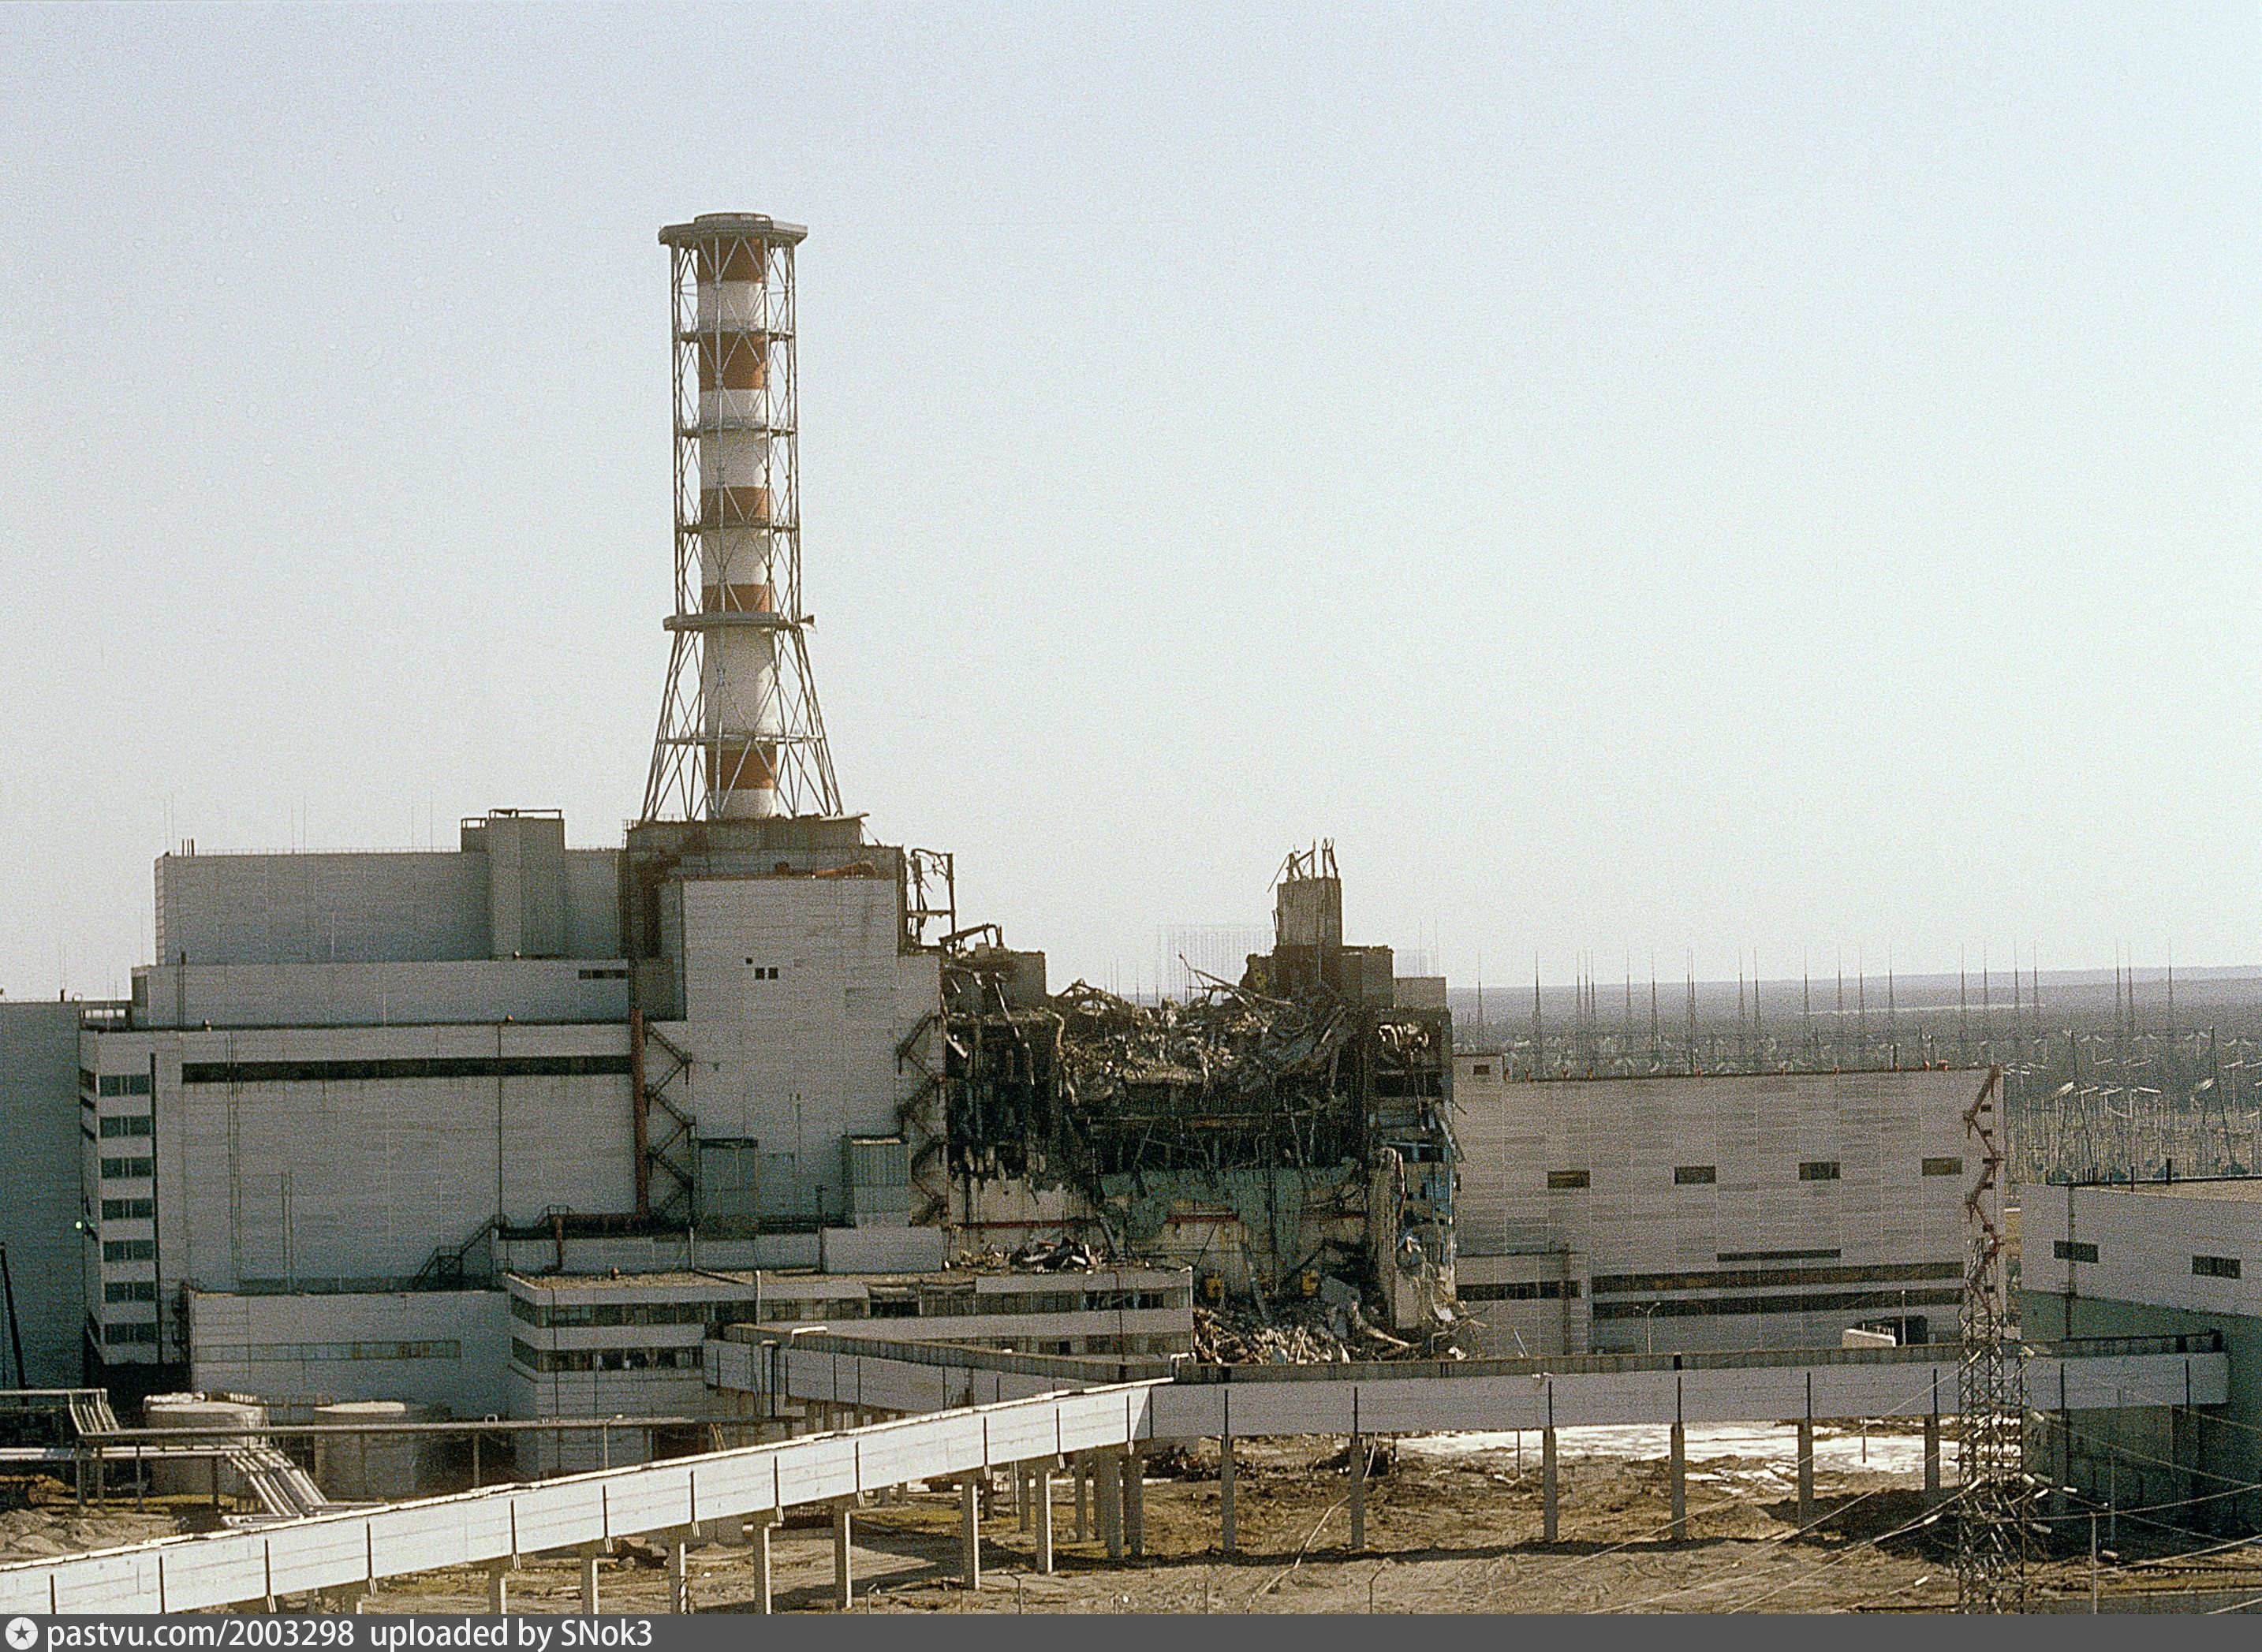 Http chernobyl. Чернобыльская АЭС 1986. 4 Энергоблок ЧАЭС 1986. Чернобыль АЭС до аварии 1986. Атомная электростанция Чернобыль 4 энергоблок.